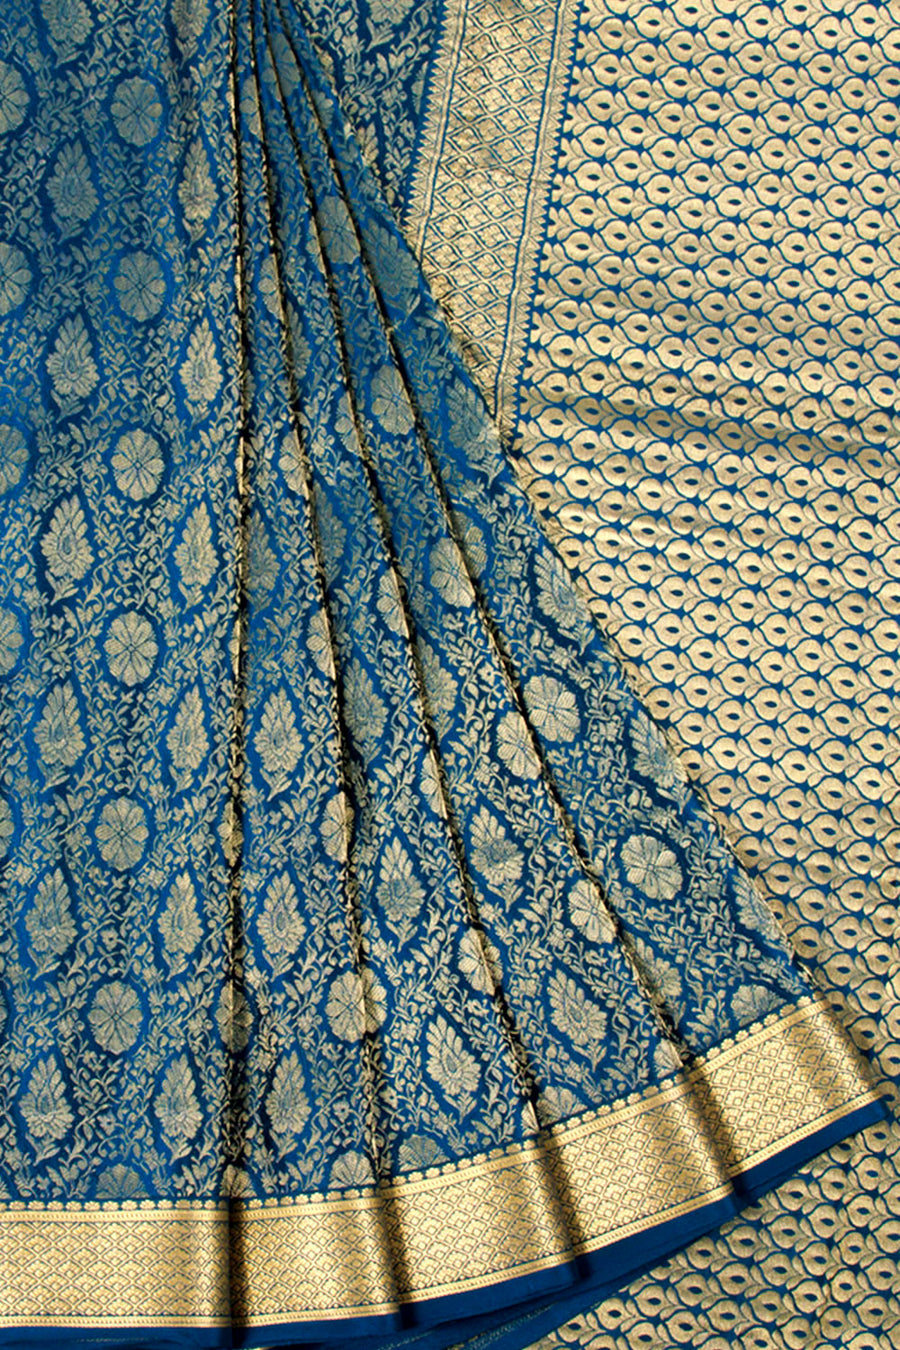 Blue Mysore Crepe Silk Saree with allover Floral Design, Zari Border and Floral Pallu